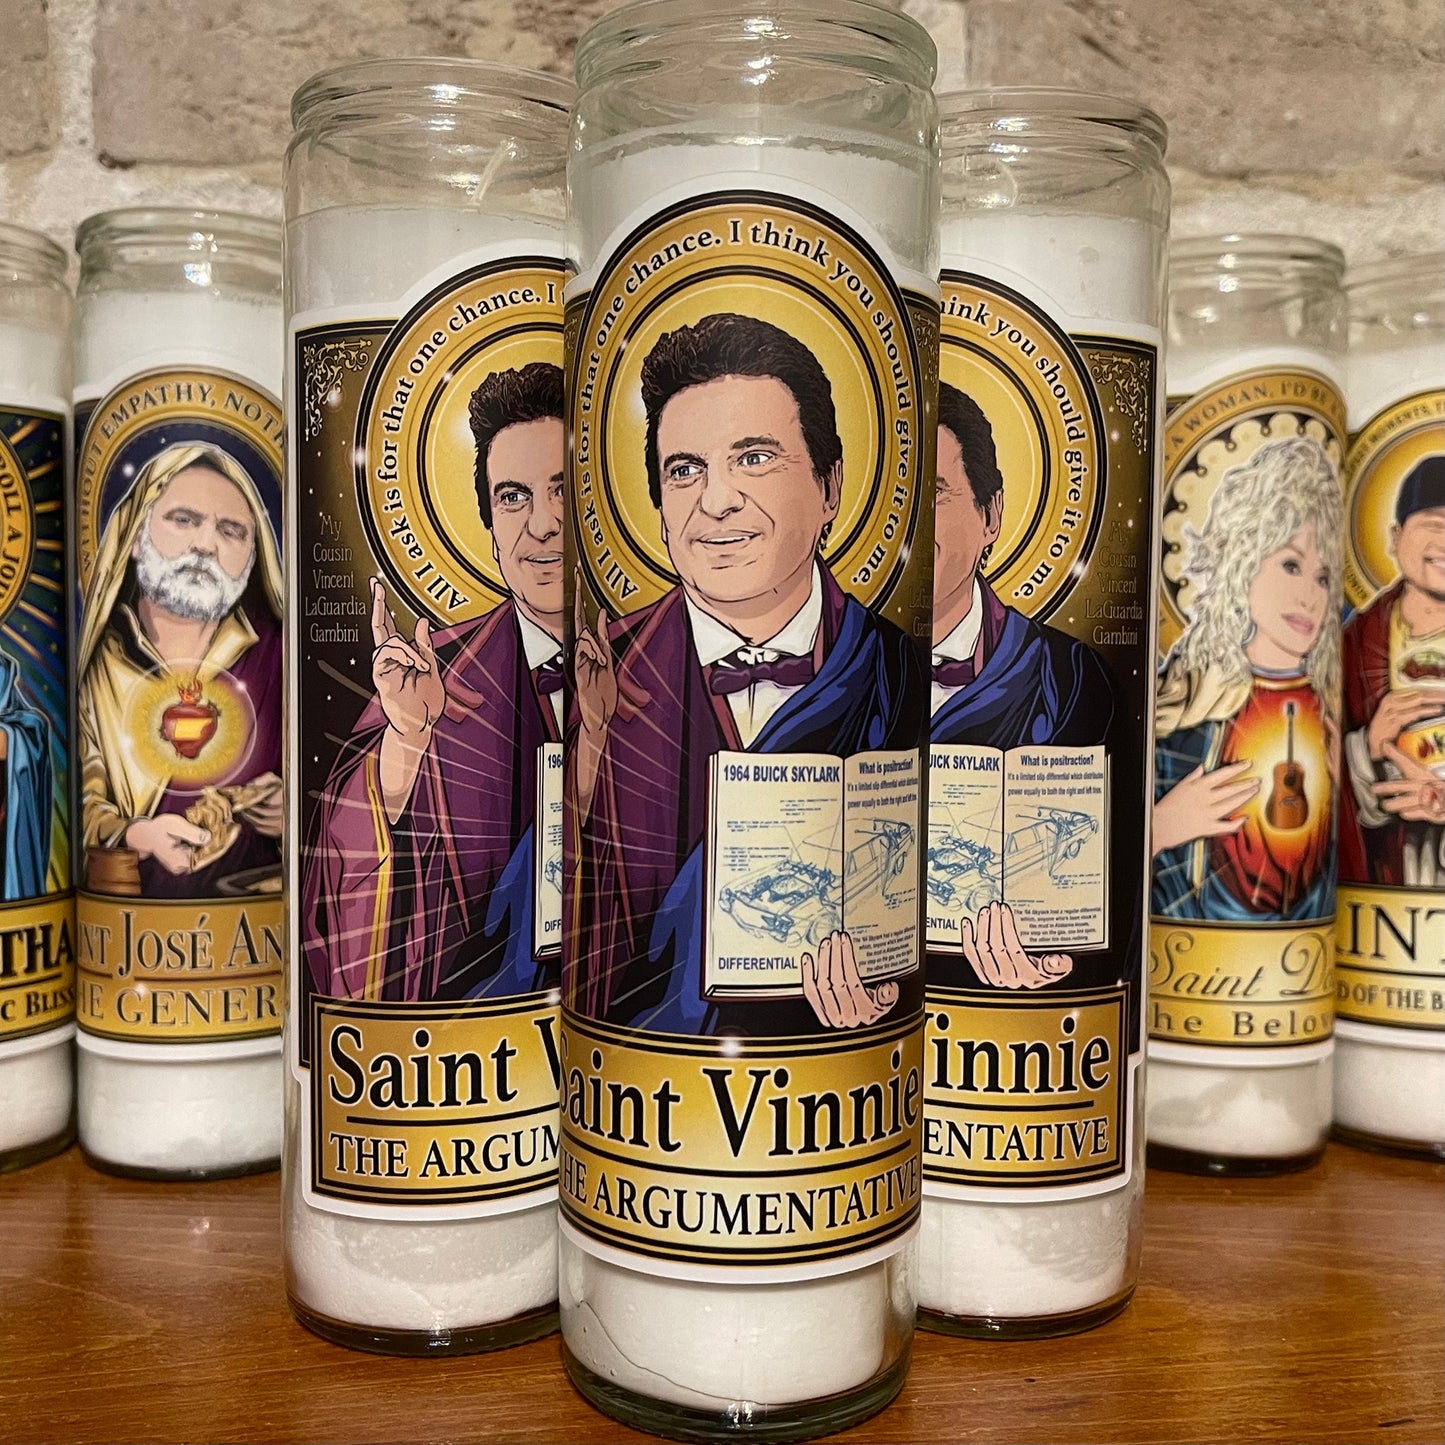 Saint Vinny The Argumentative Candle Cleaverandblade.com